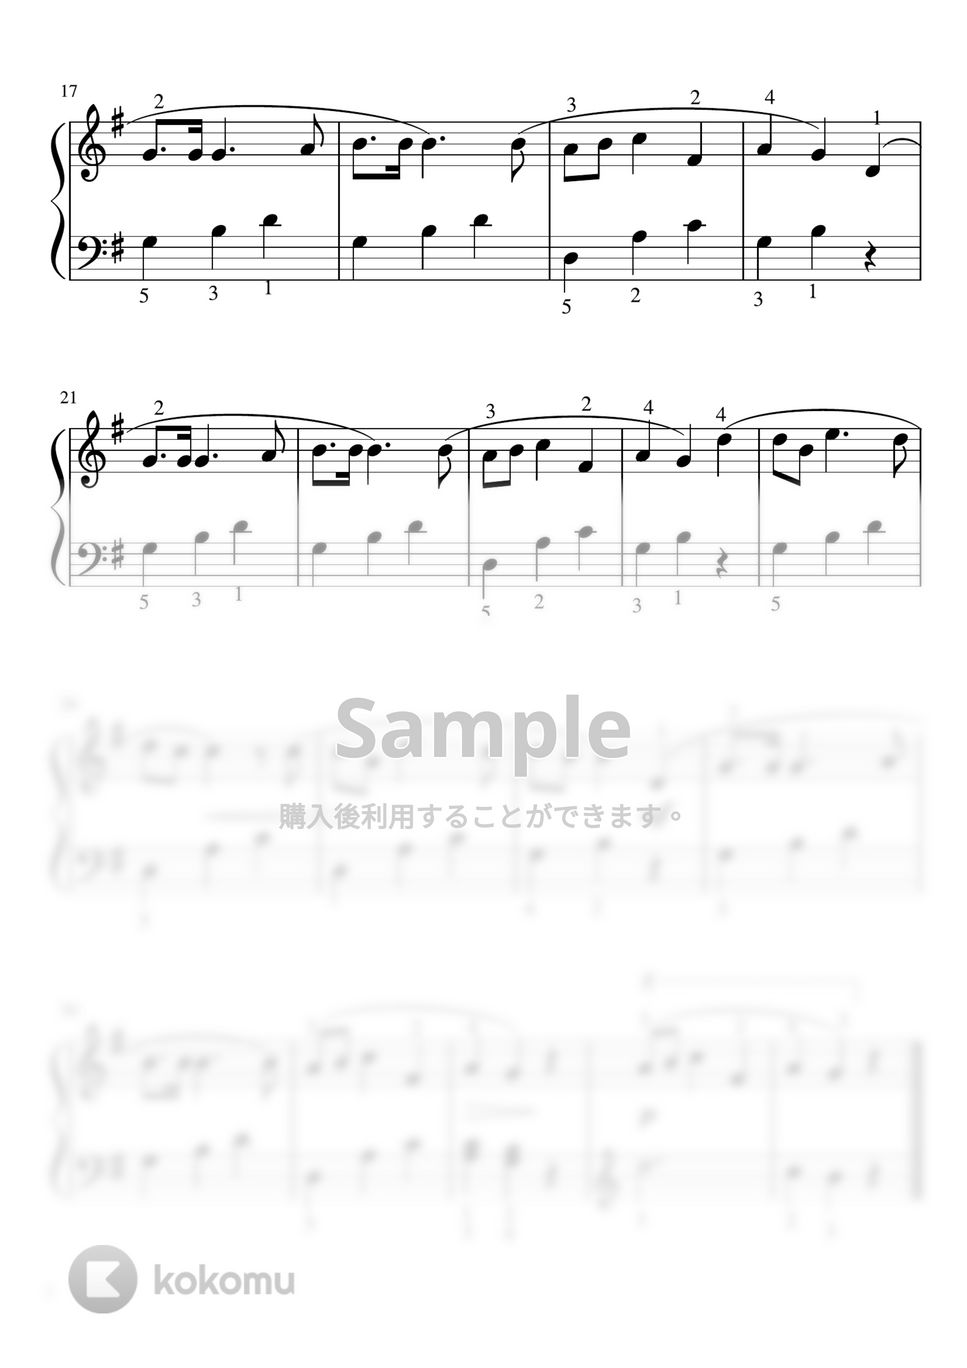 トラディショナル - もみの木 (Gdur ・ピアノソロ初級・指番号付き) by pfkaori